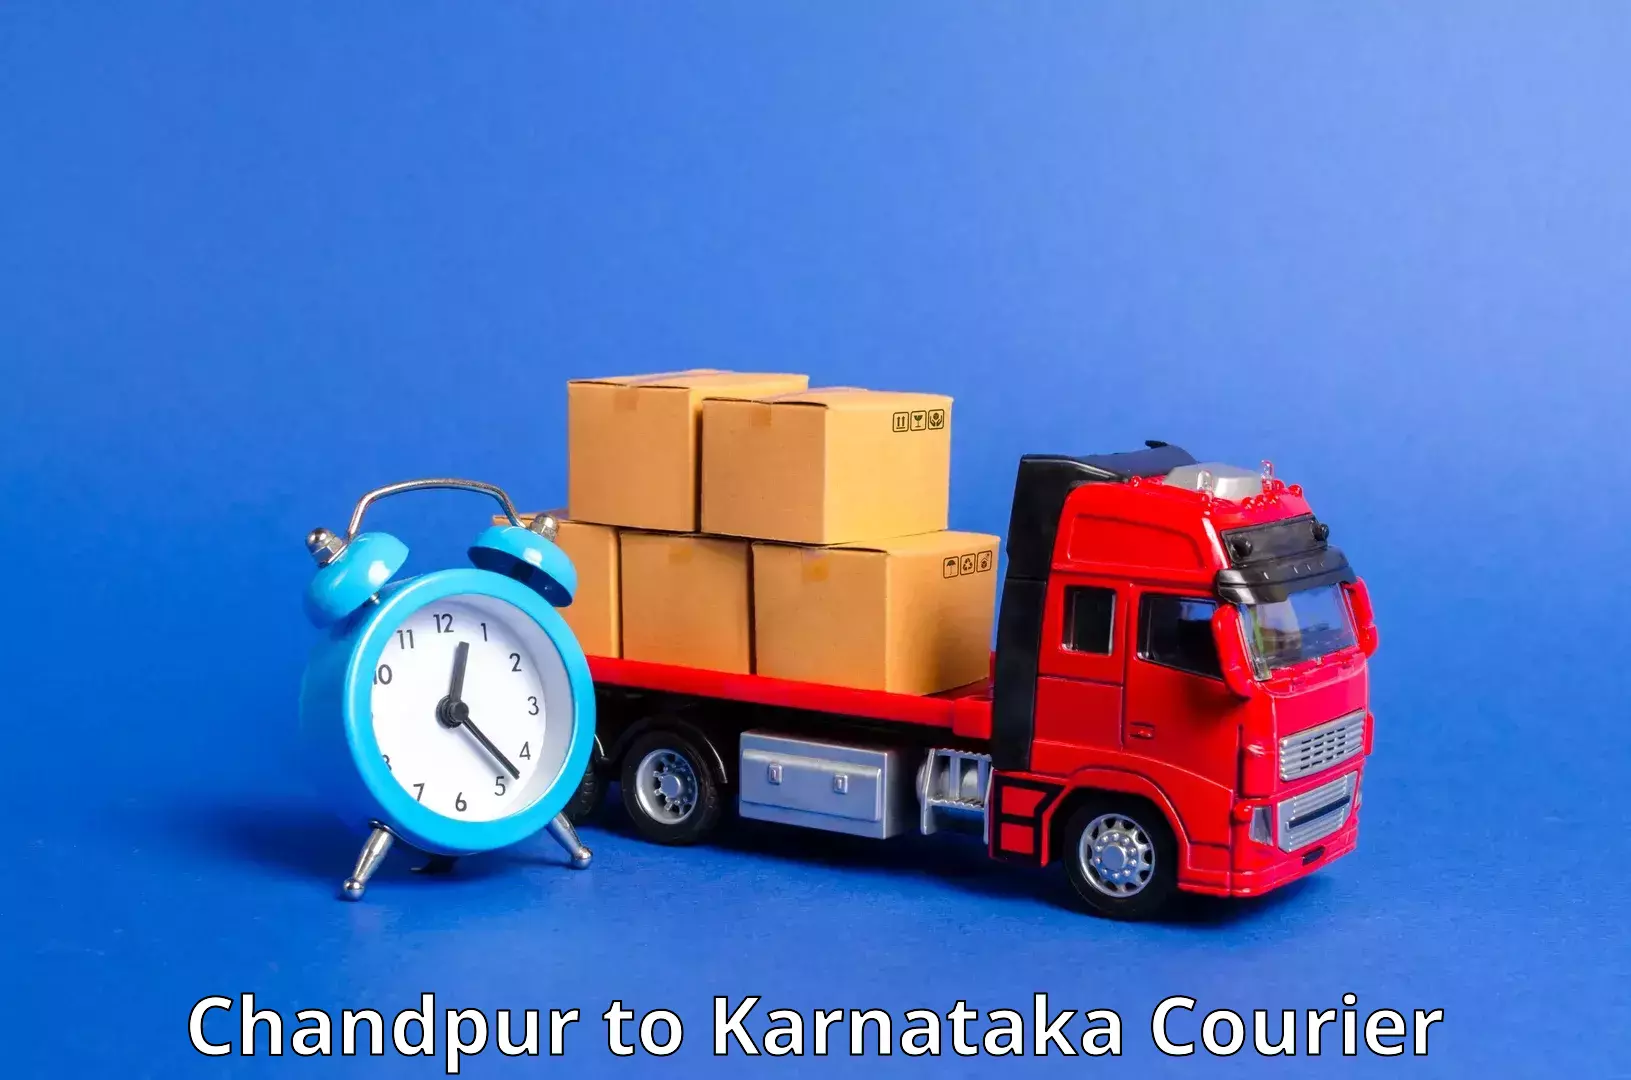 Fast delivery service Chandpur to Basavakalyan